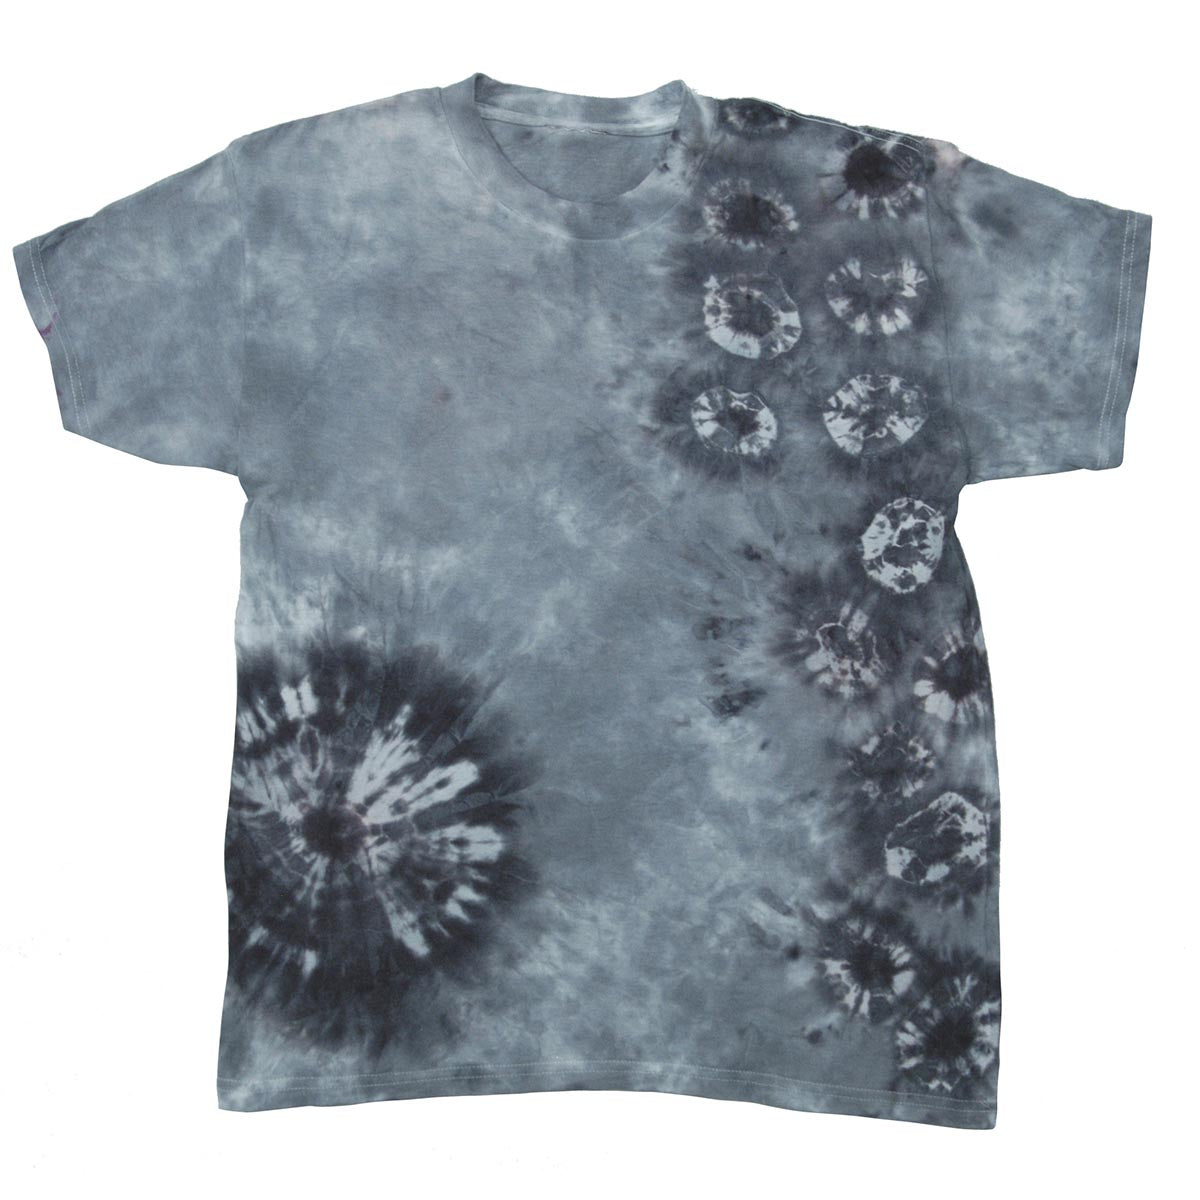 Jacquard Tie-Dye Kit für T-Shirts - Onyx Jewel Tone